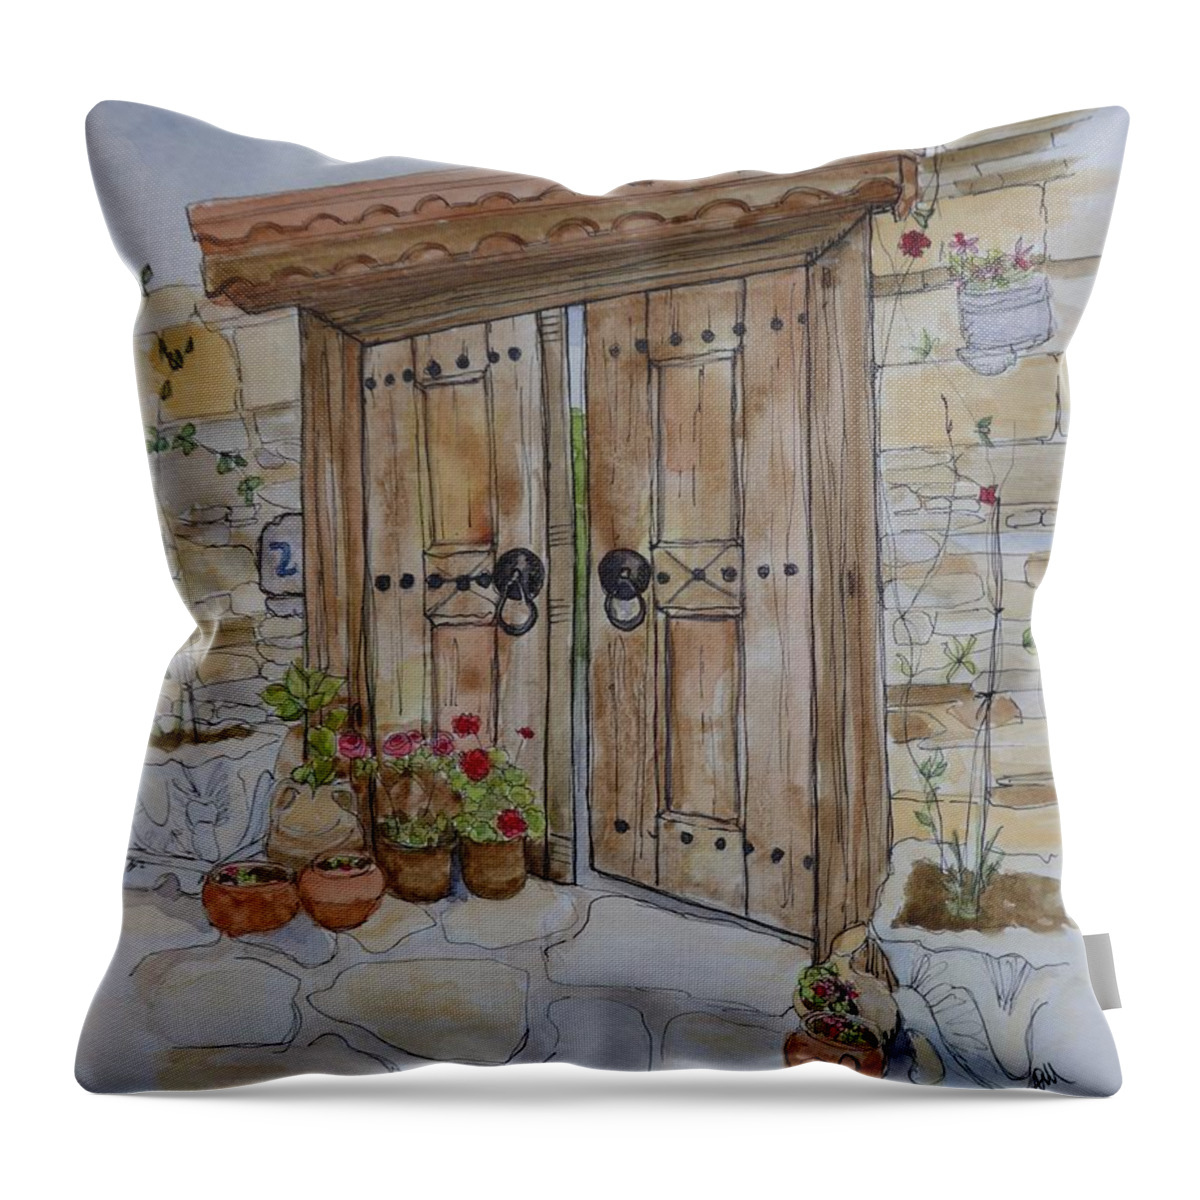 Antique Door Throw Pillow featuring the painting Garden door by Lisa Mutch